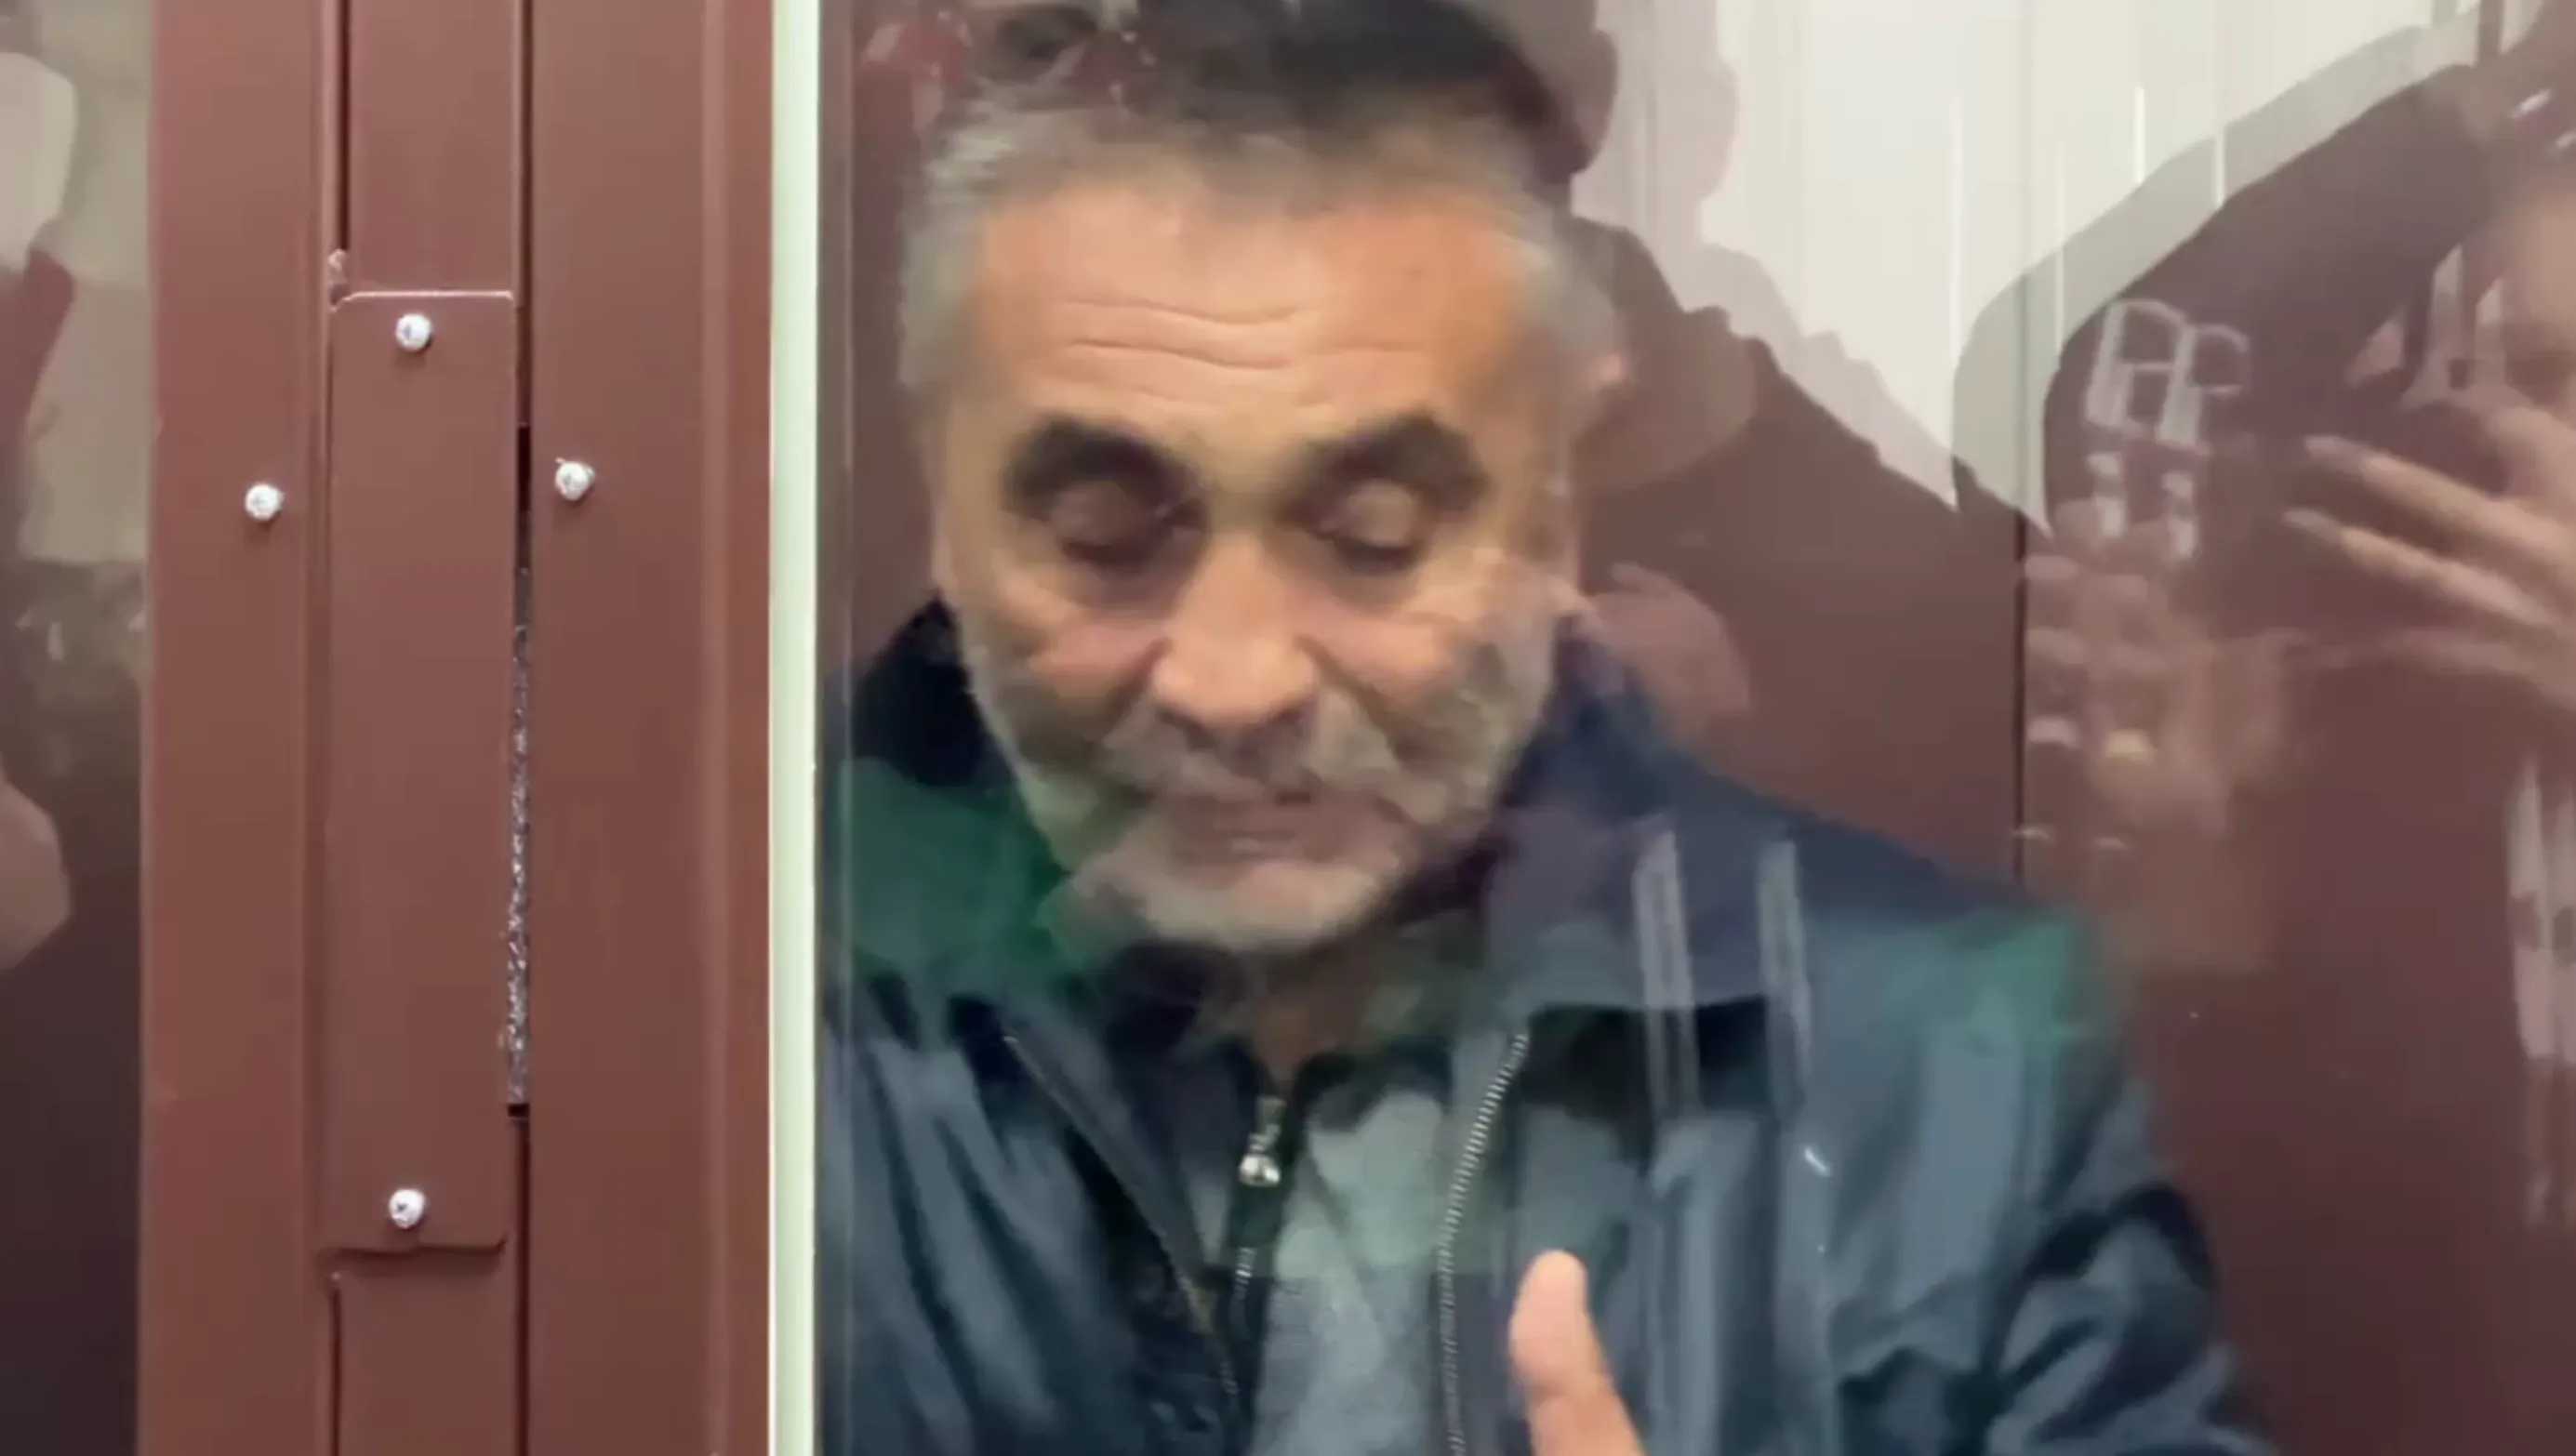 Суд арестовал дядю обвиняемого в убийстве байкера в Москве